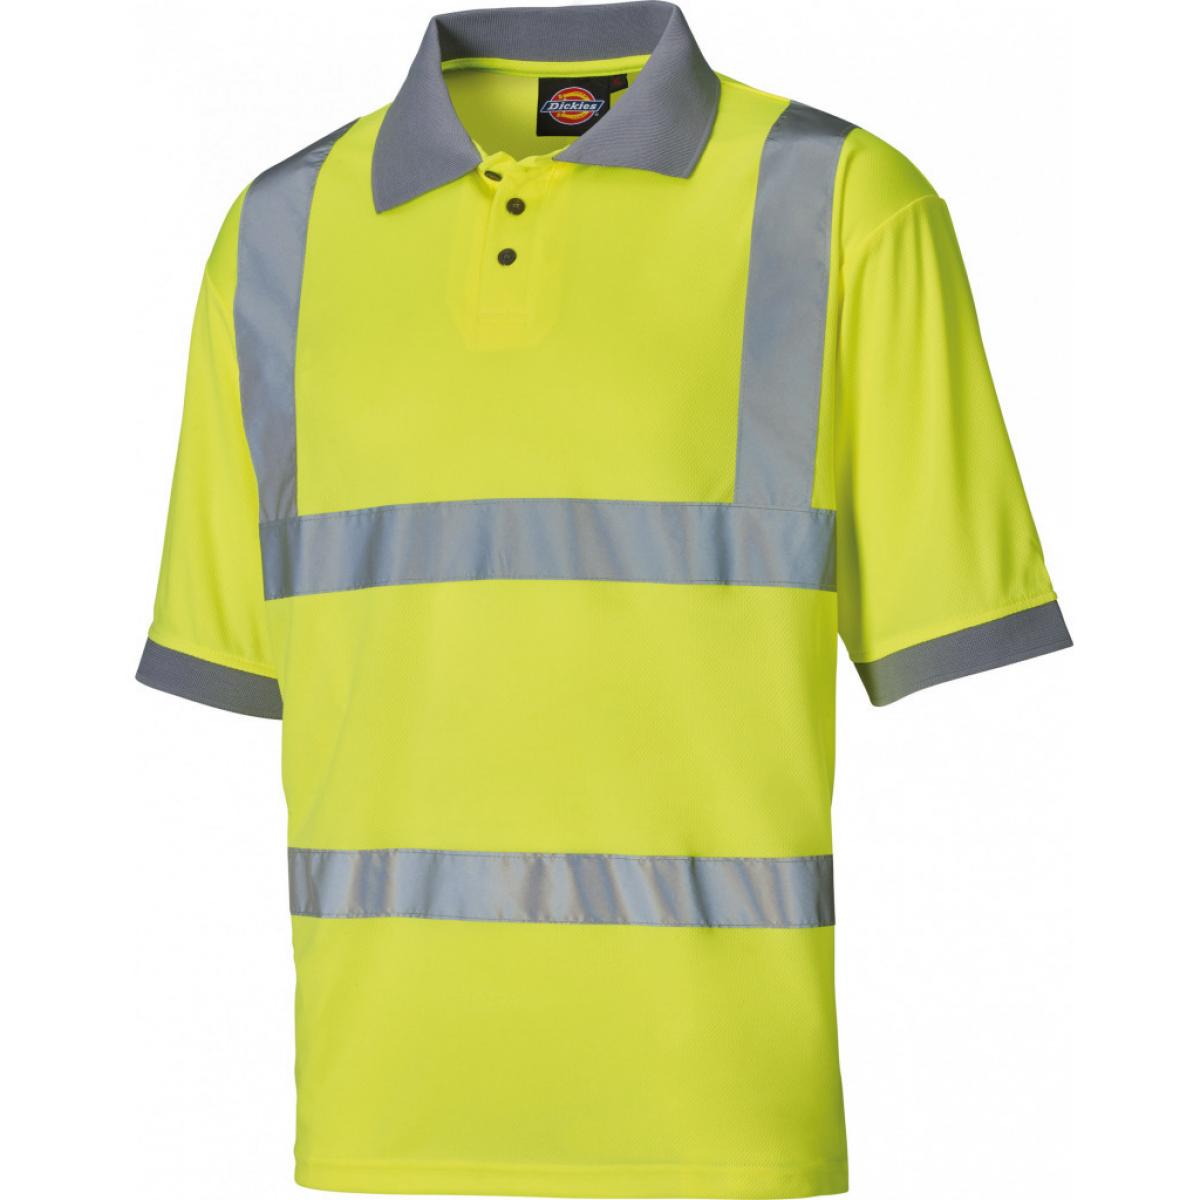 Hersteller: Dickies Herstellernummer: SA22075 Artikelbezeichnung: Hochsichtbares Polo-Shirt - EN ISO 20471:2013 Klasse 2 Farbe: Gelb